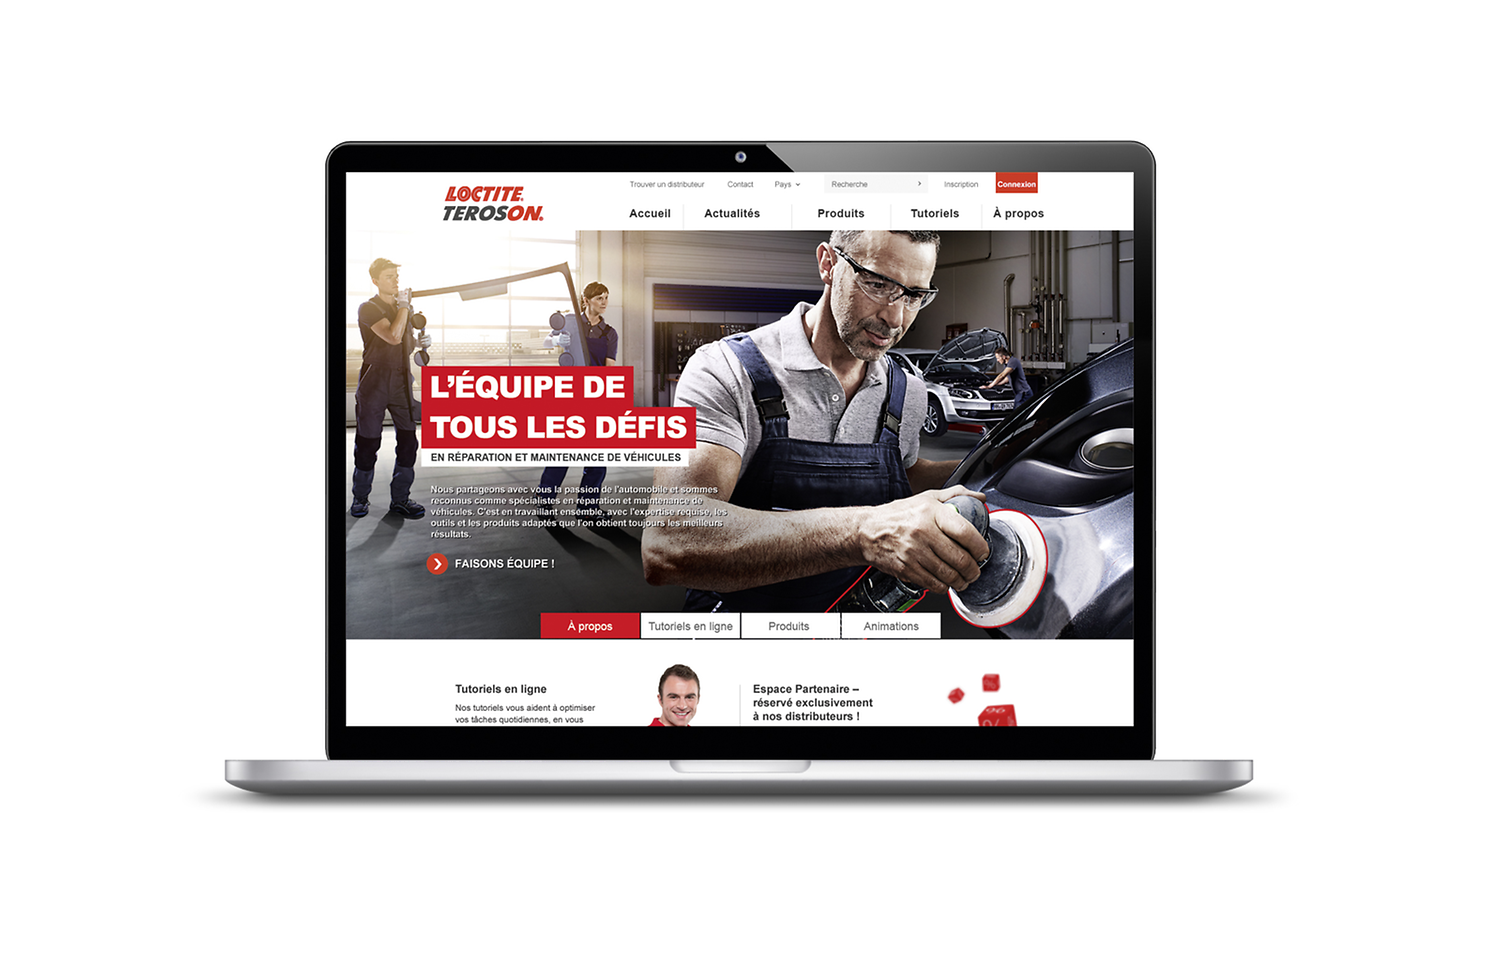 Le nouveau portail en ligne www.reparation-vehicules.fr propose des produits et services destinés aux professionnels du secteur de la réparation et maintenance de véhicules